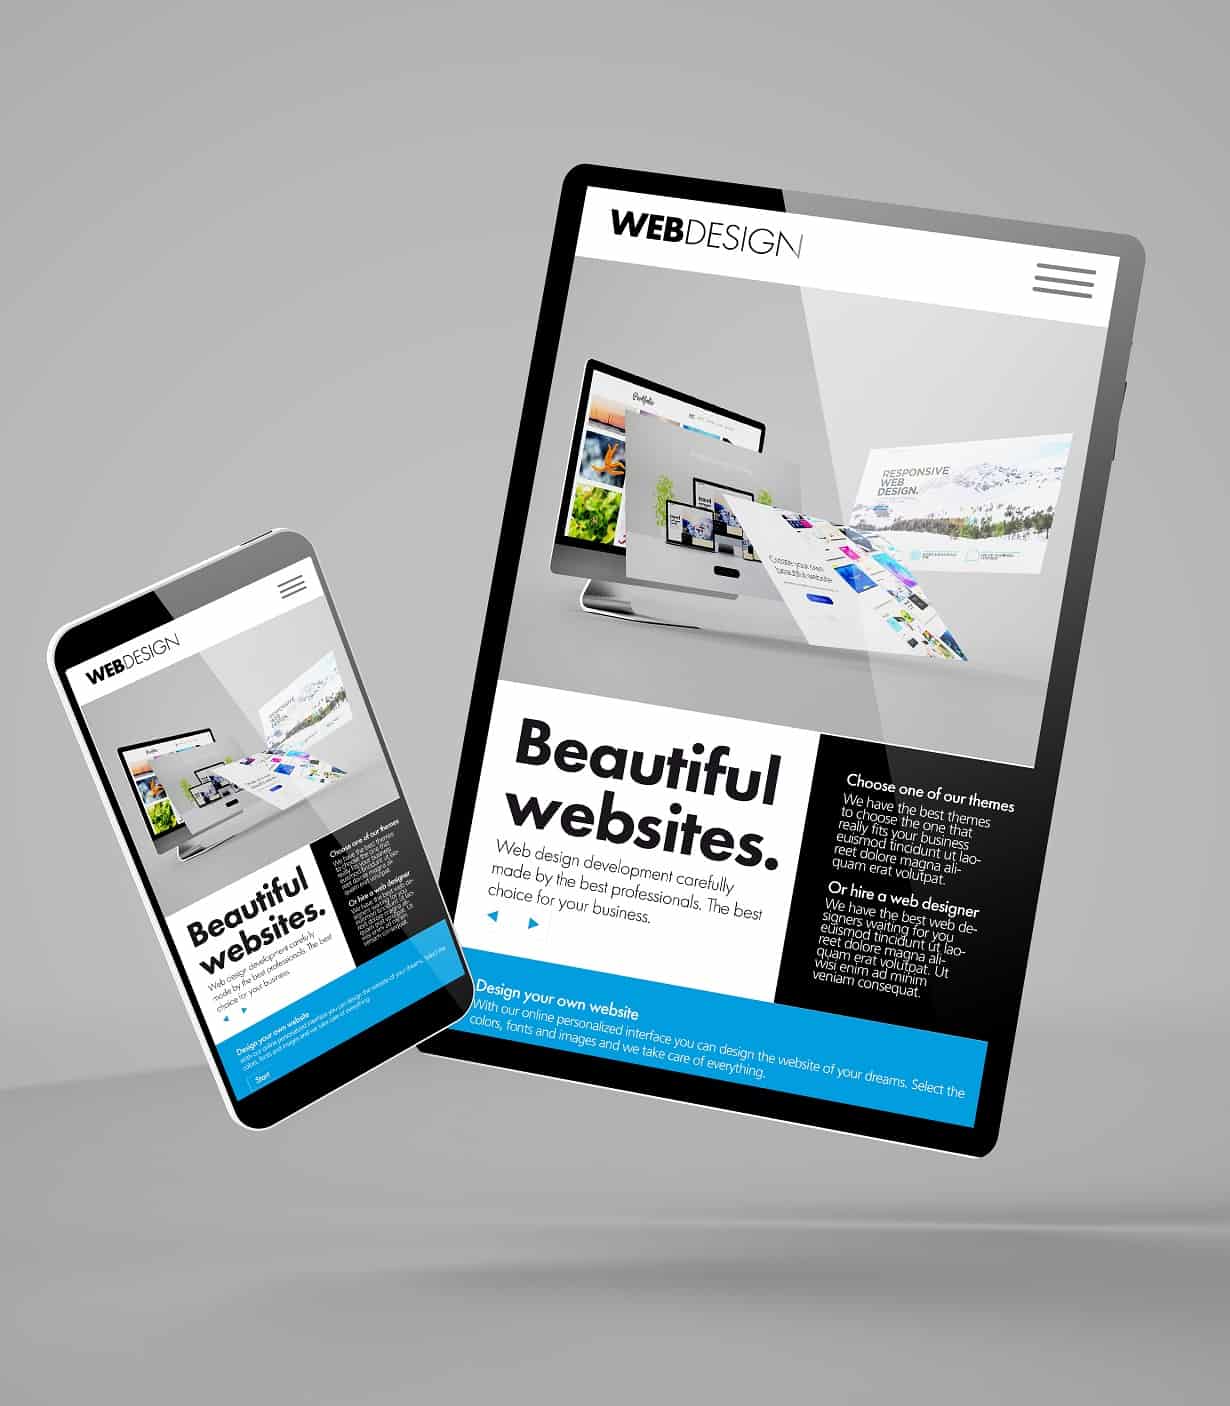 flying smartphone and tablet mockup 3d rendering showing builder website